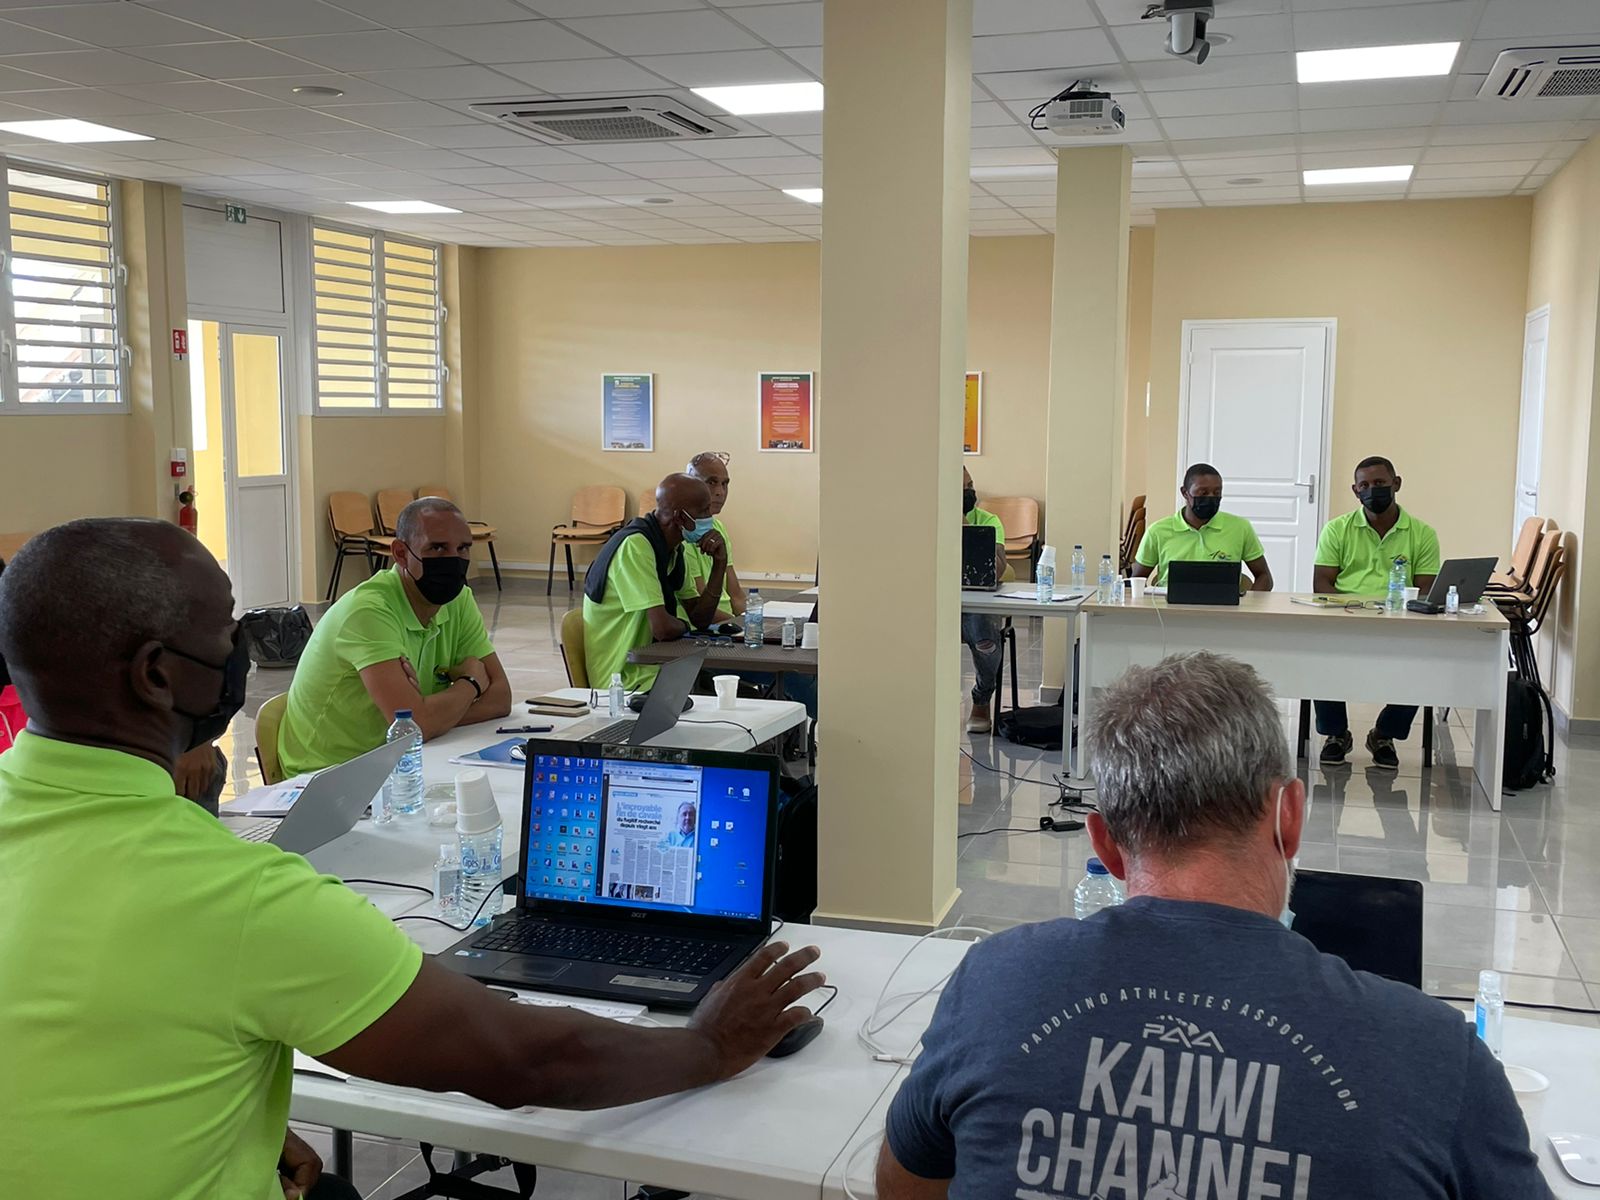     Secourisme : la fédération nationale organise une formation continue en Guadeloupe

